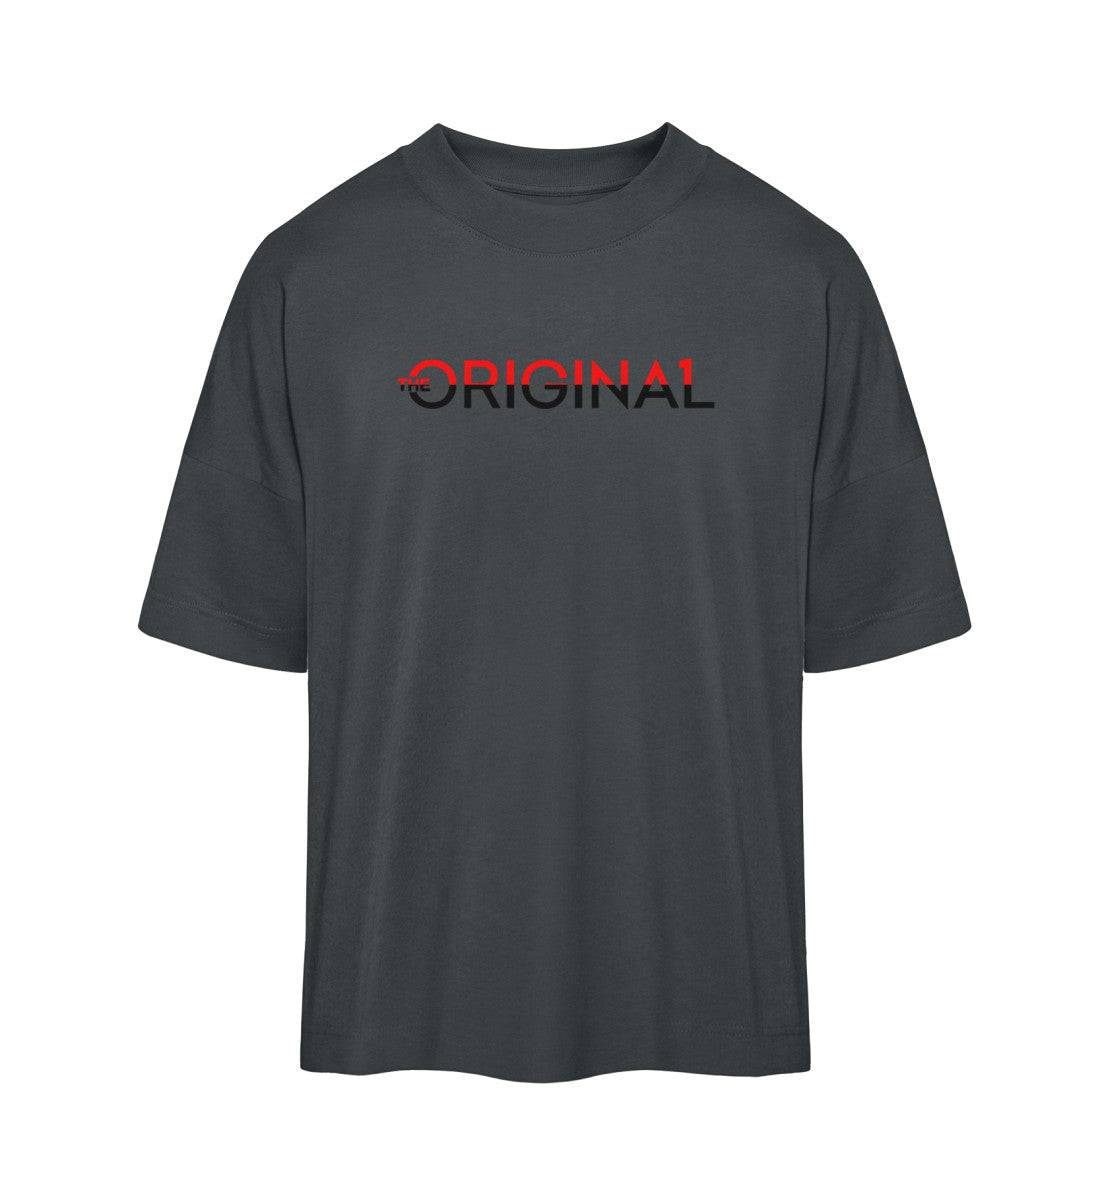 The Original One Oversized T-shirt | The Original One